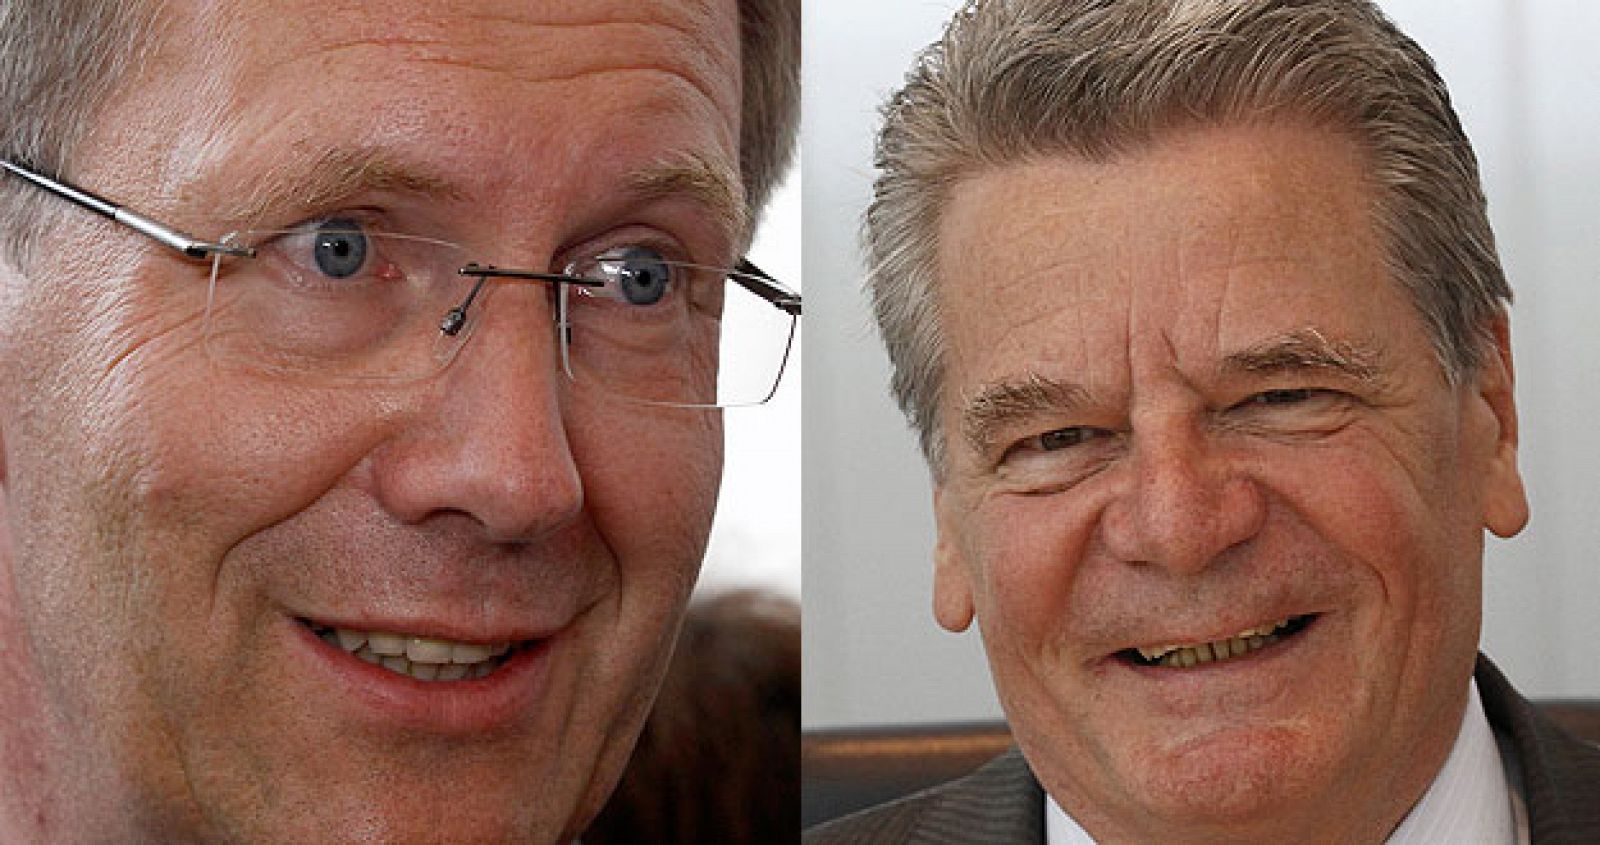 El candidato democristiano, Christian Wulff, goza de menos popularidad que el de la oposición, Joachim Gauck.